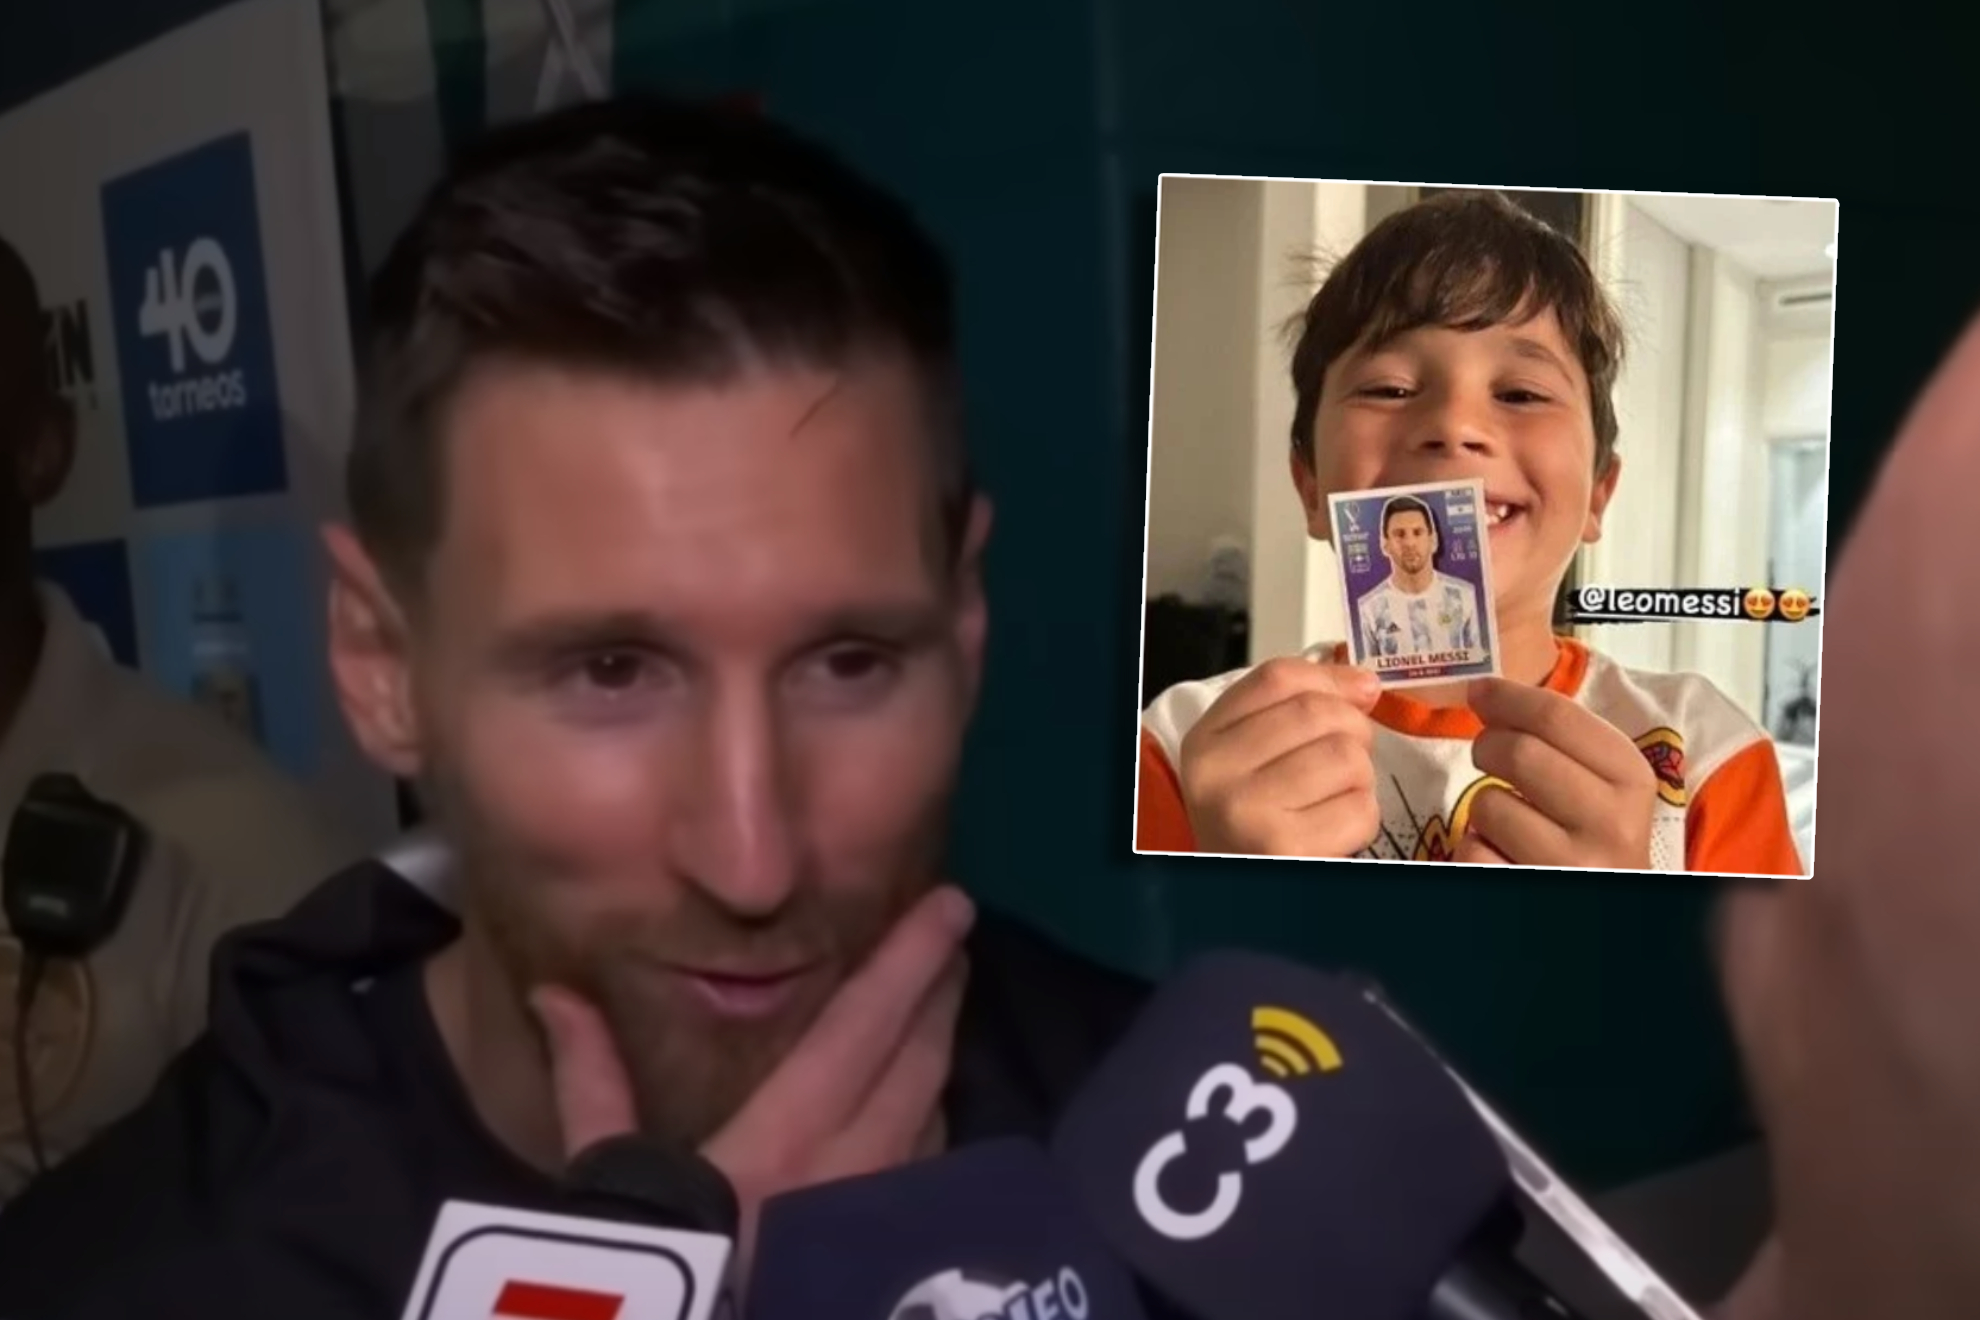 Messi reacciona a la foto viral de Mateo con su cromo: "Ellos están igual que todos"